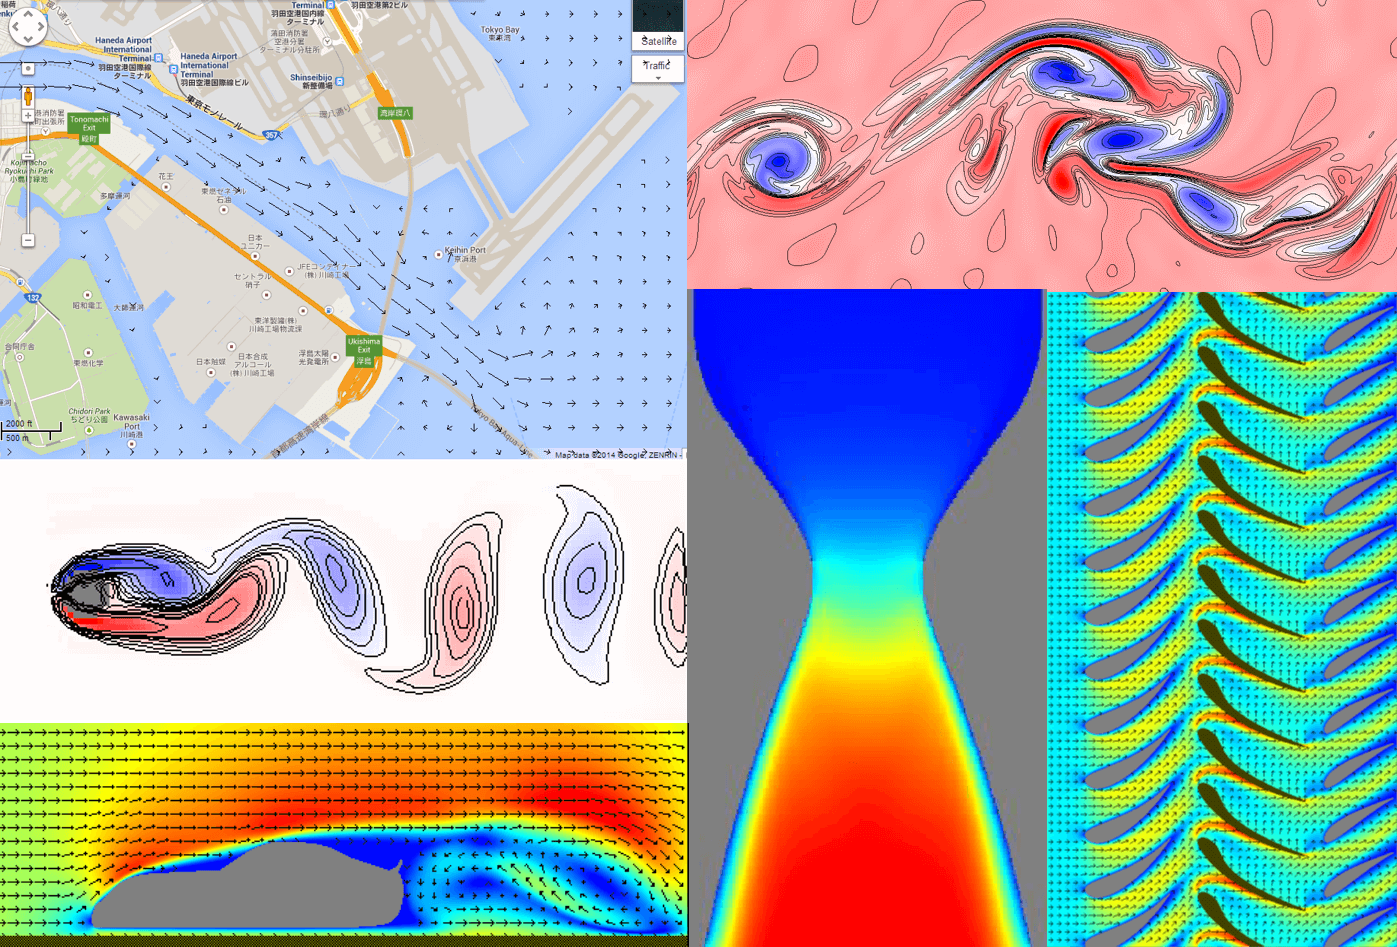 図1.1　Flowsquareを用いた流体シミュレーション結果の例。左上：多摩川の流速ベクトル、左中：カルマン渦列、左下：自動車周りの流れ、右上：混合層（ケルビン・ヘルムホルツ不安定性）、右下：ジェットエンジン・コンプレッサー、中下：超音速ノズル